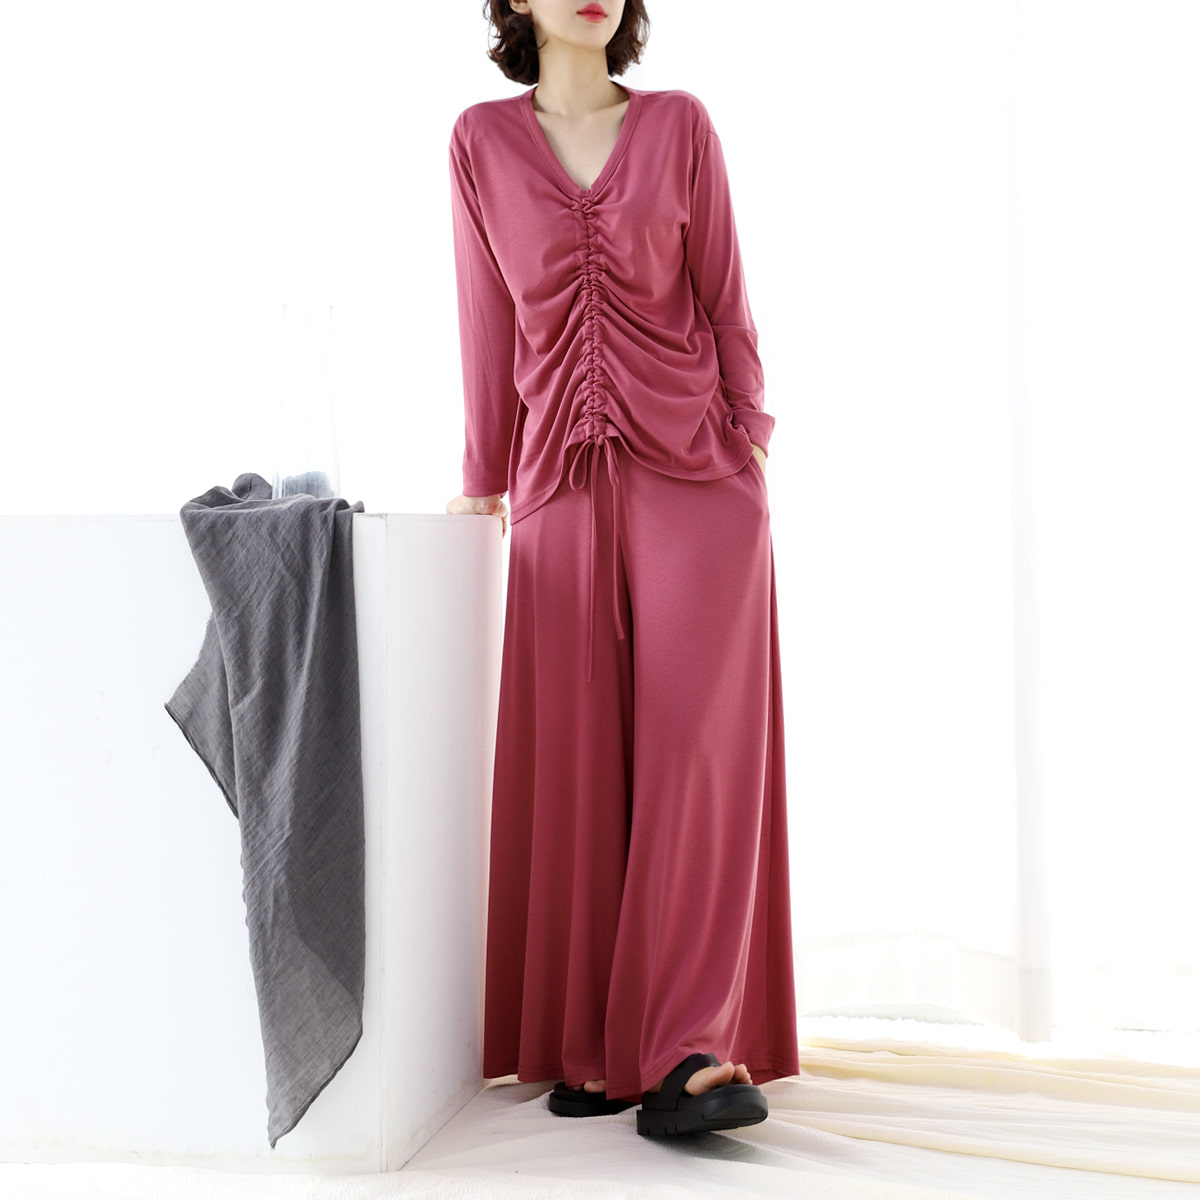 마웬set 브이넥 셔링 허리복대형 와이드 통바지 팬츠 임부복 투피스 코디세트 봄옷 3color